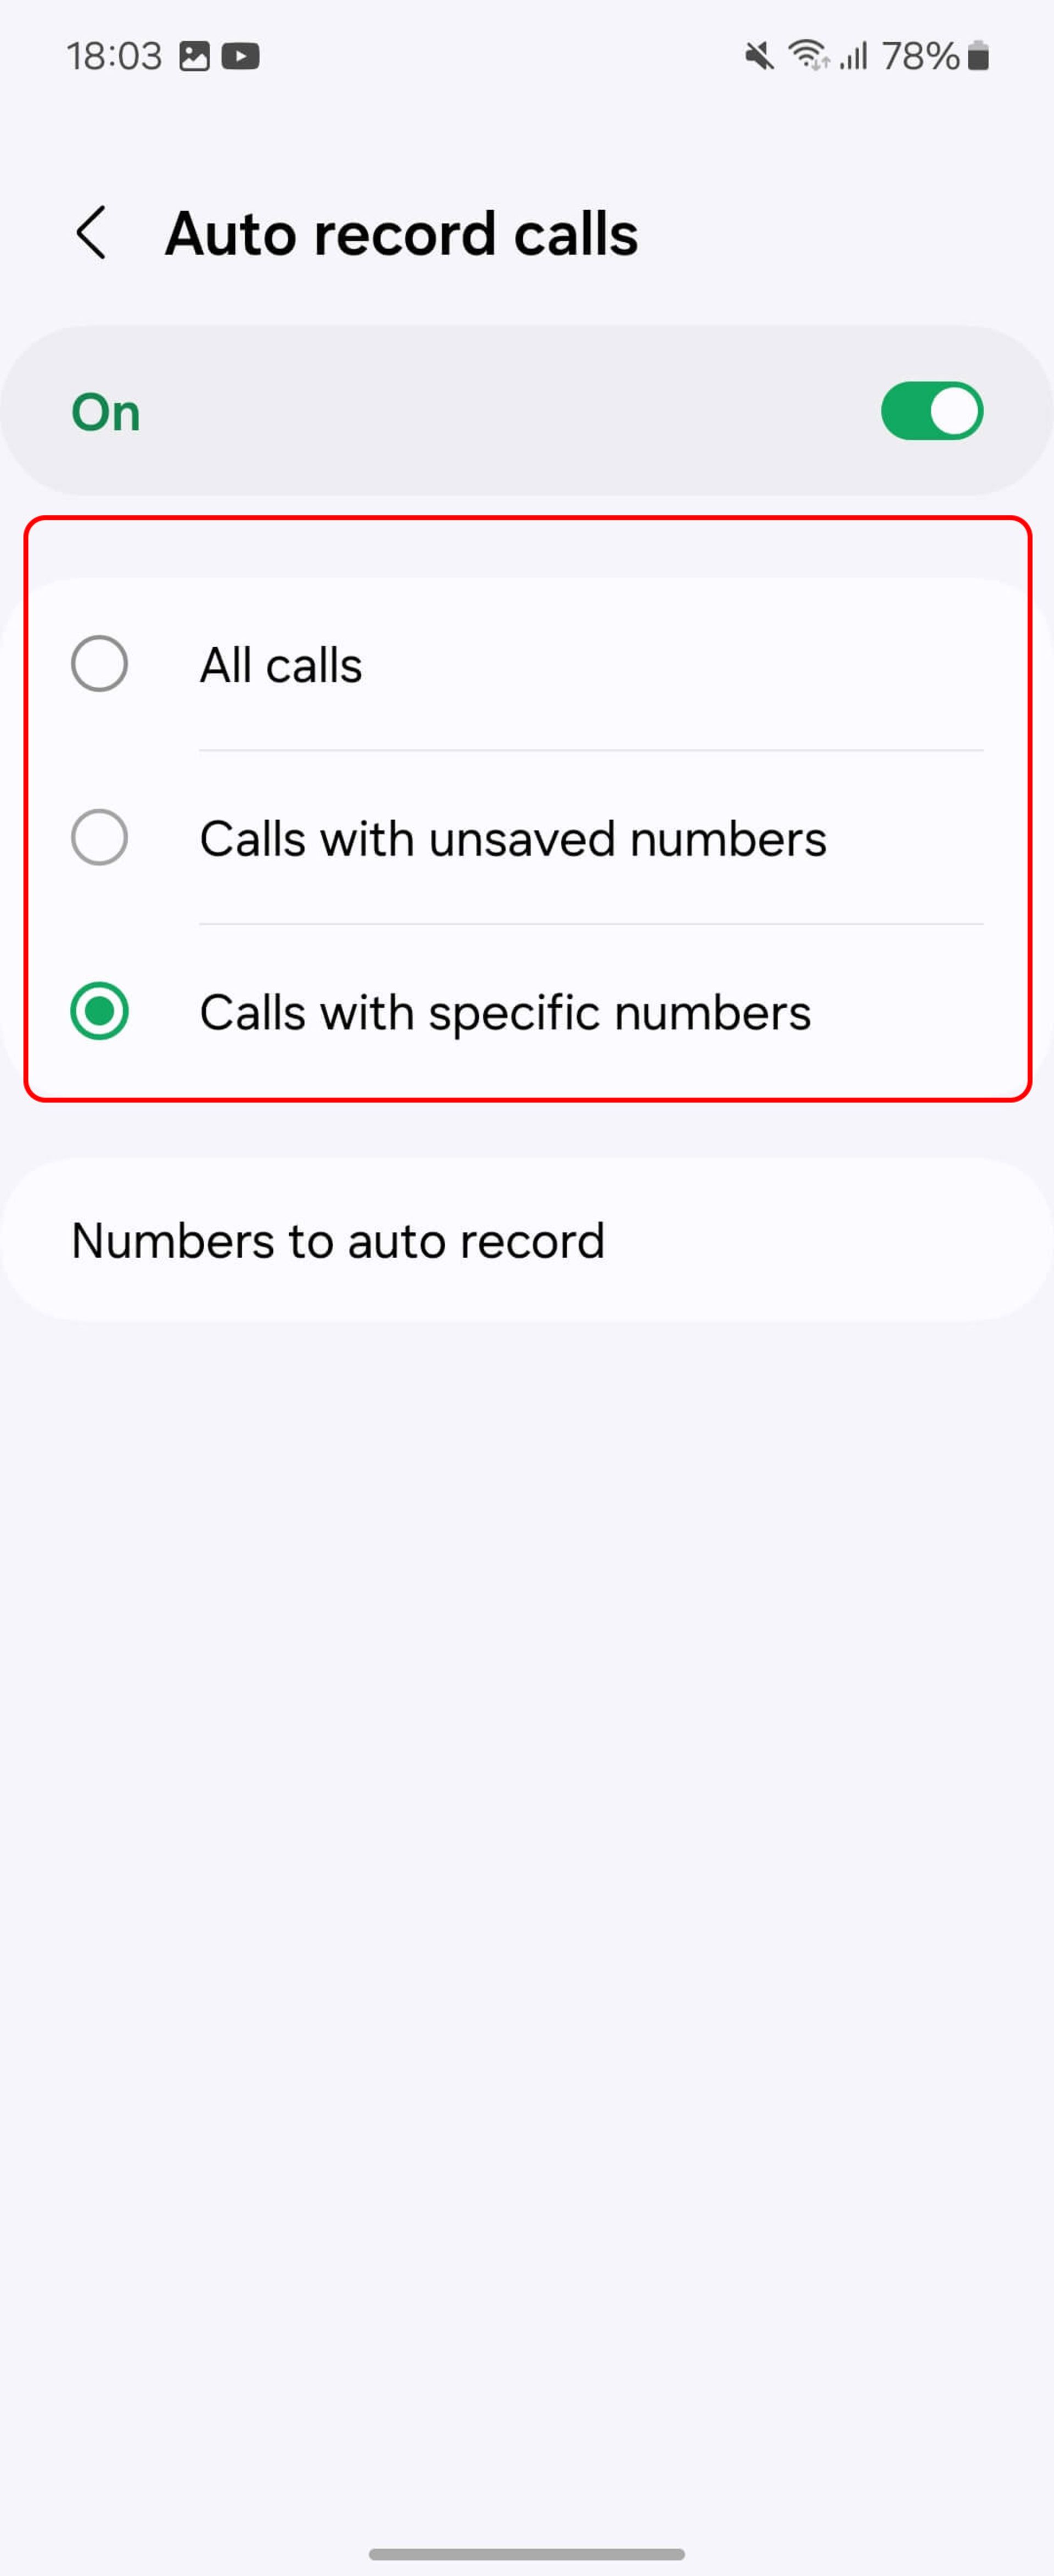 انتخاب Calls withunsaved numbers یا Calls with specific numbers